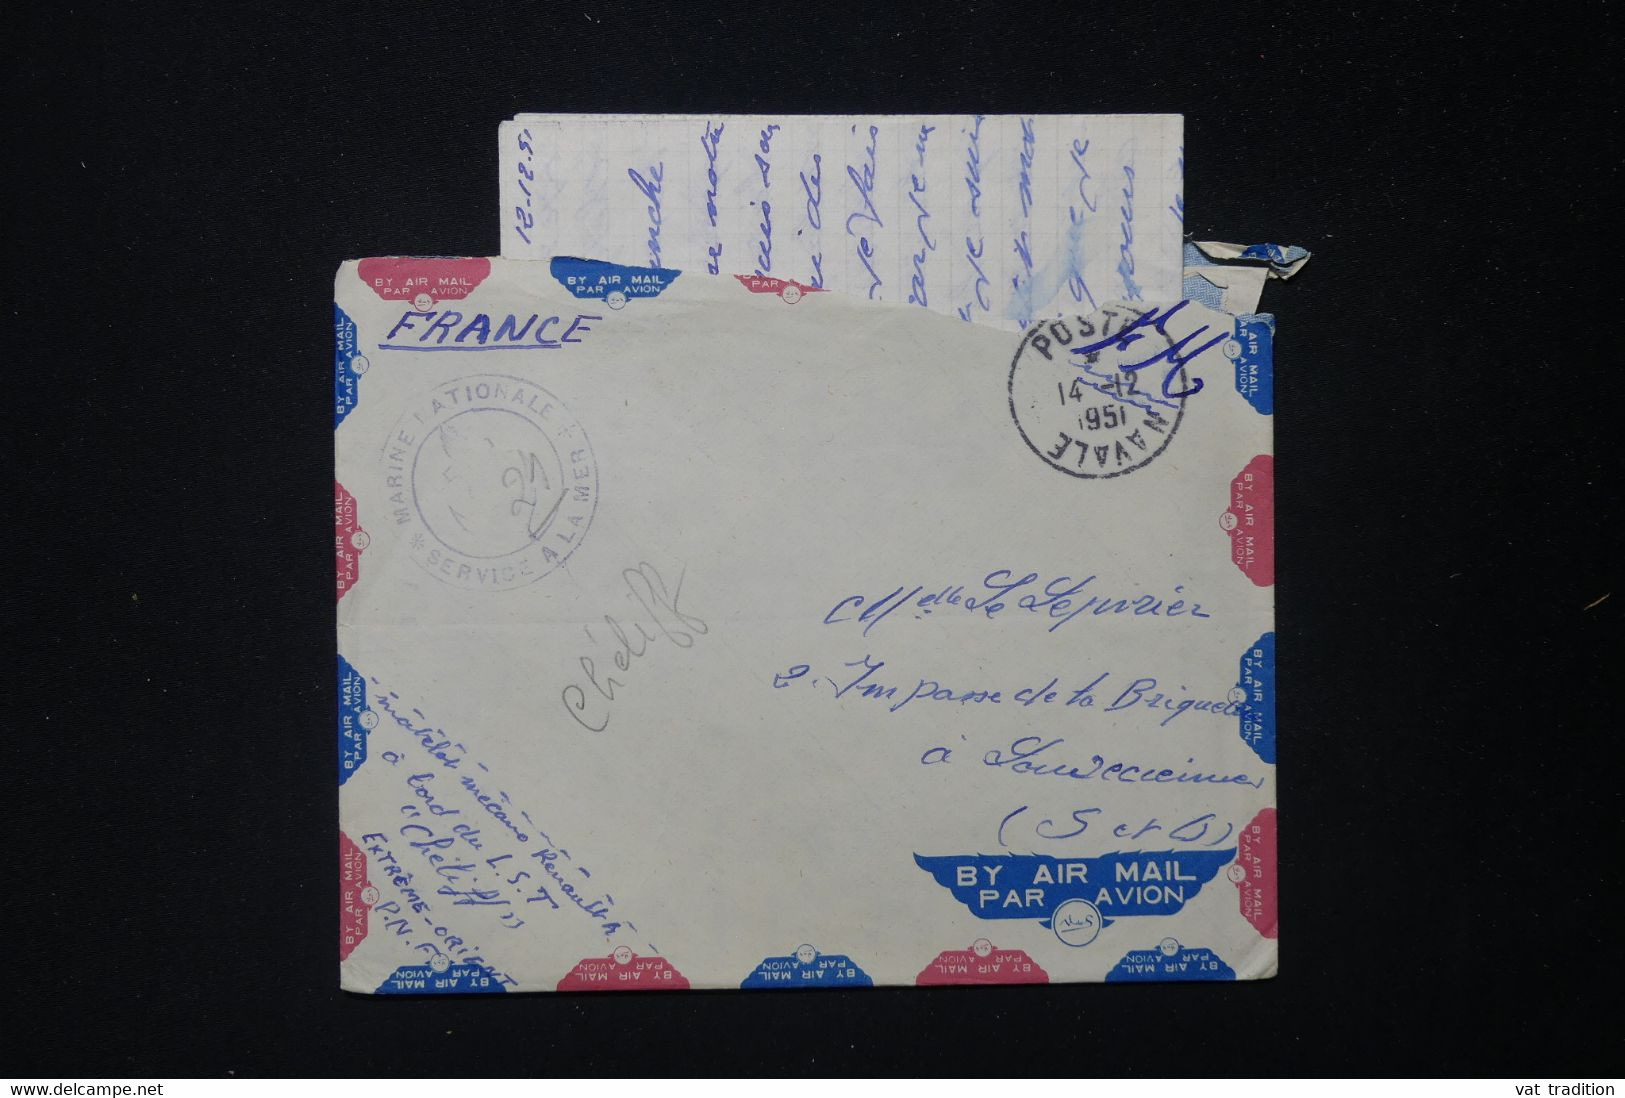 FRANCE - Enveloppe Avec Contenu D'un Marin En Indochine Pour La France En 1951 - L 83869 - Guerra D'Indocina/Vietnam